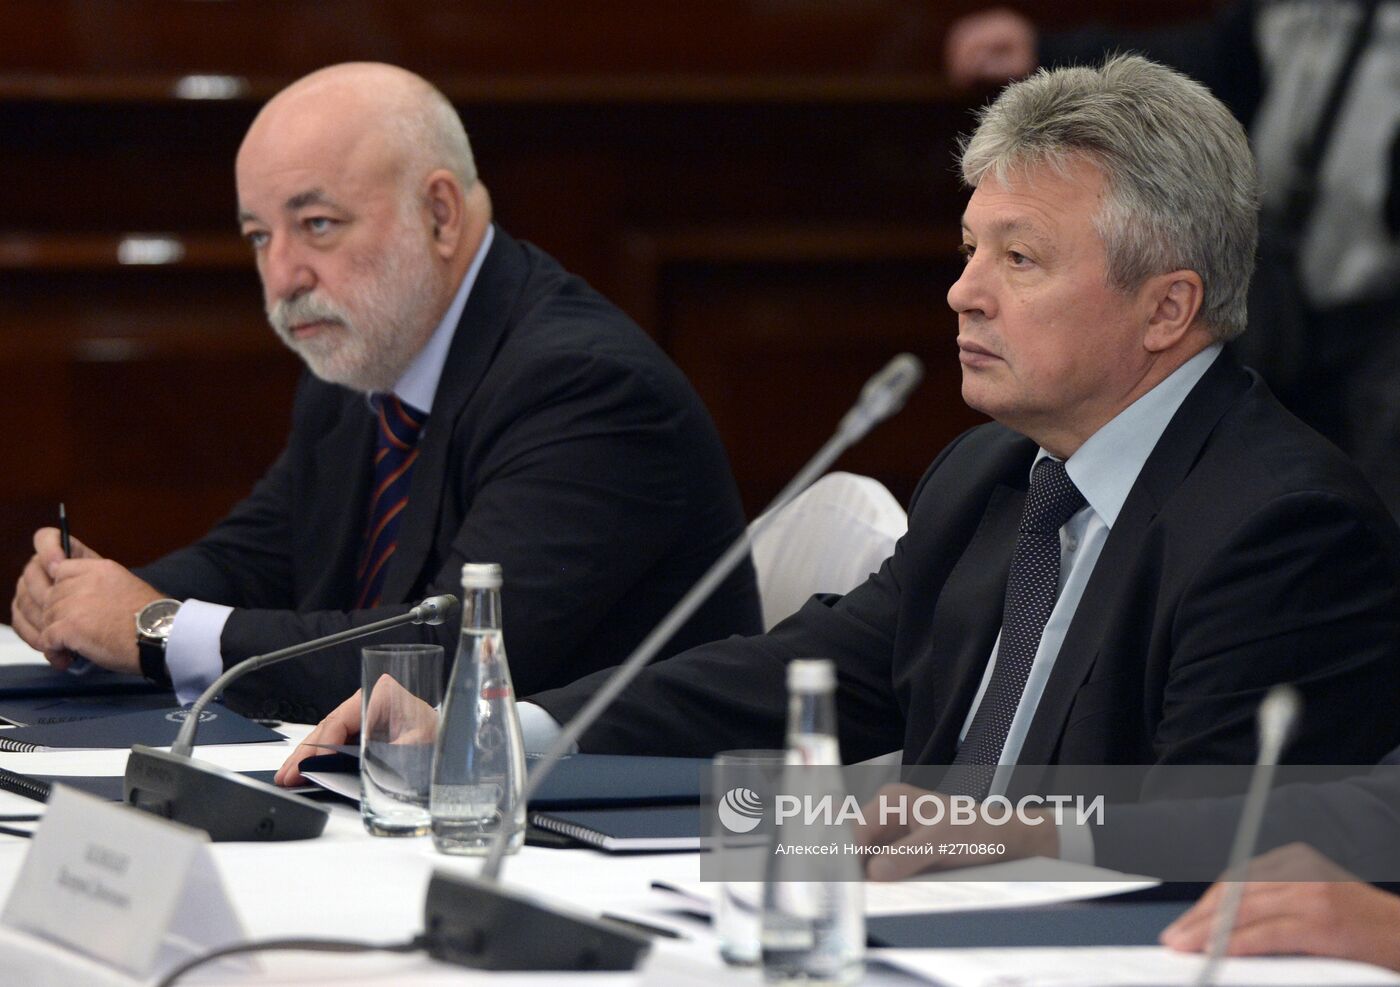 Руководитель администрации президента РФ С.Иванов провел заседание попечительского совета РФБ